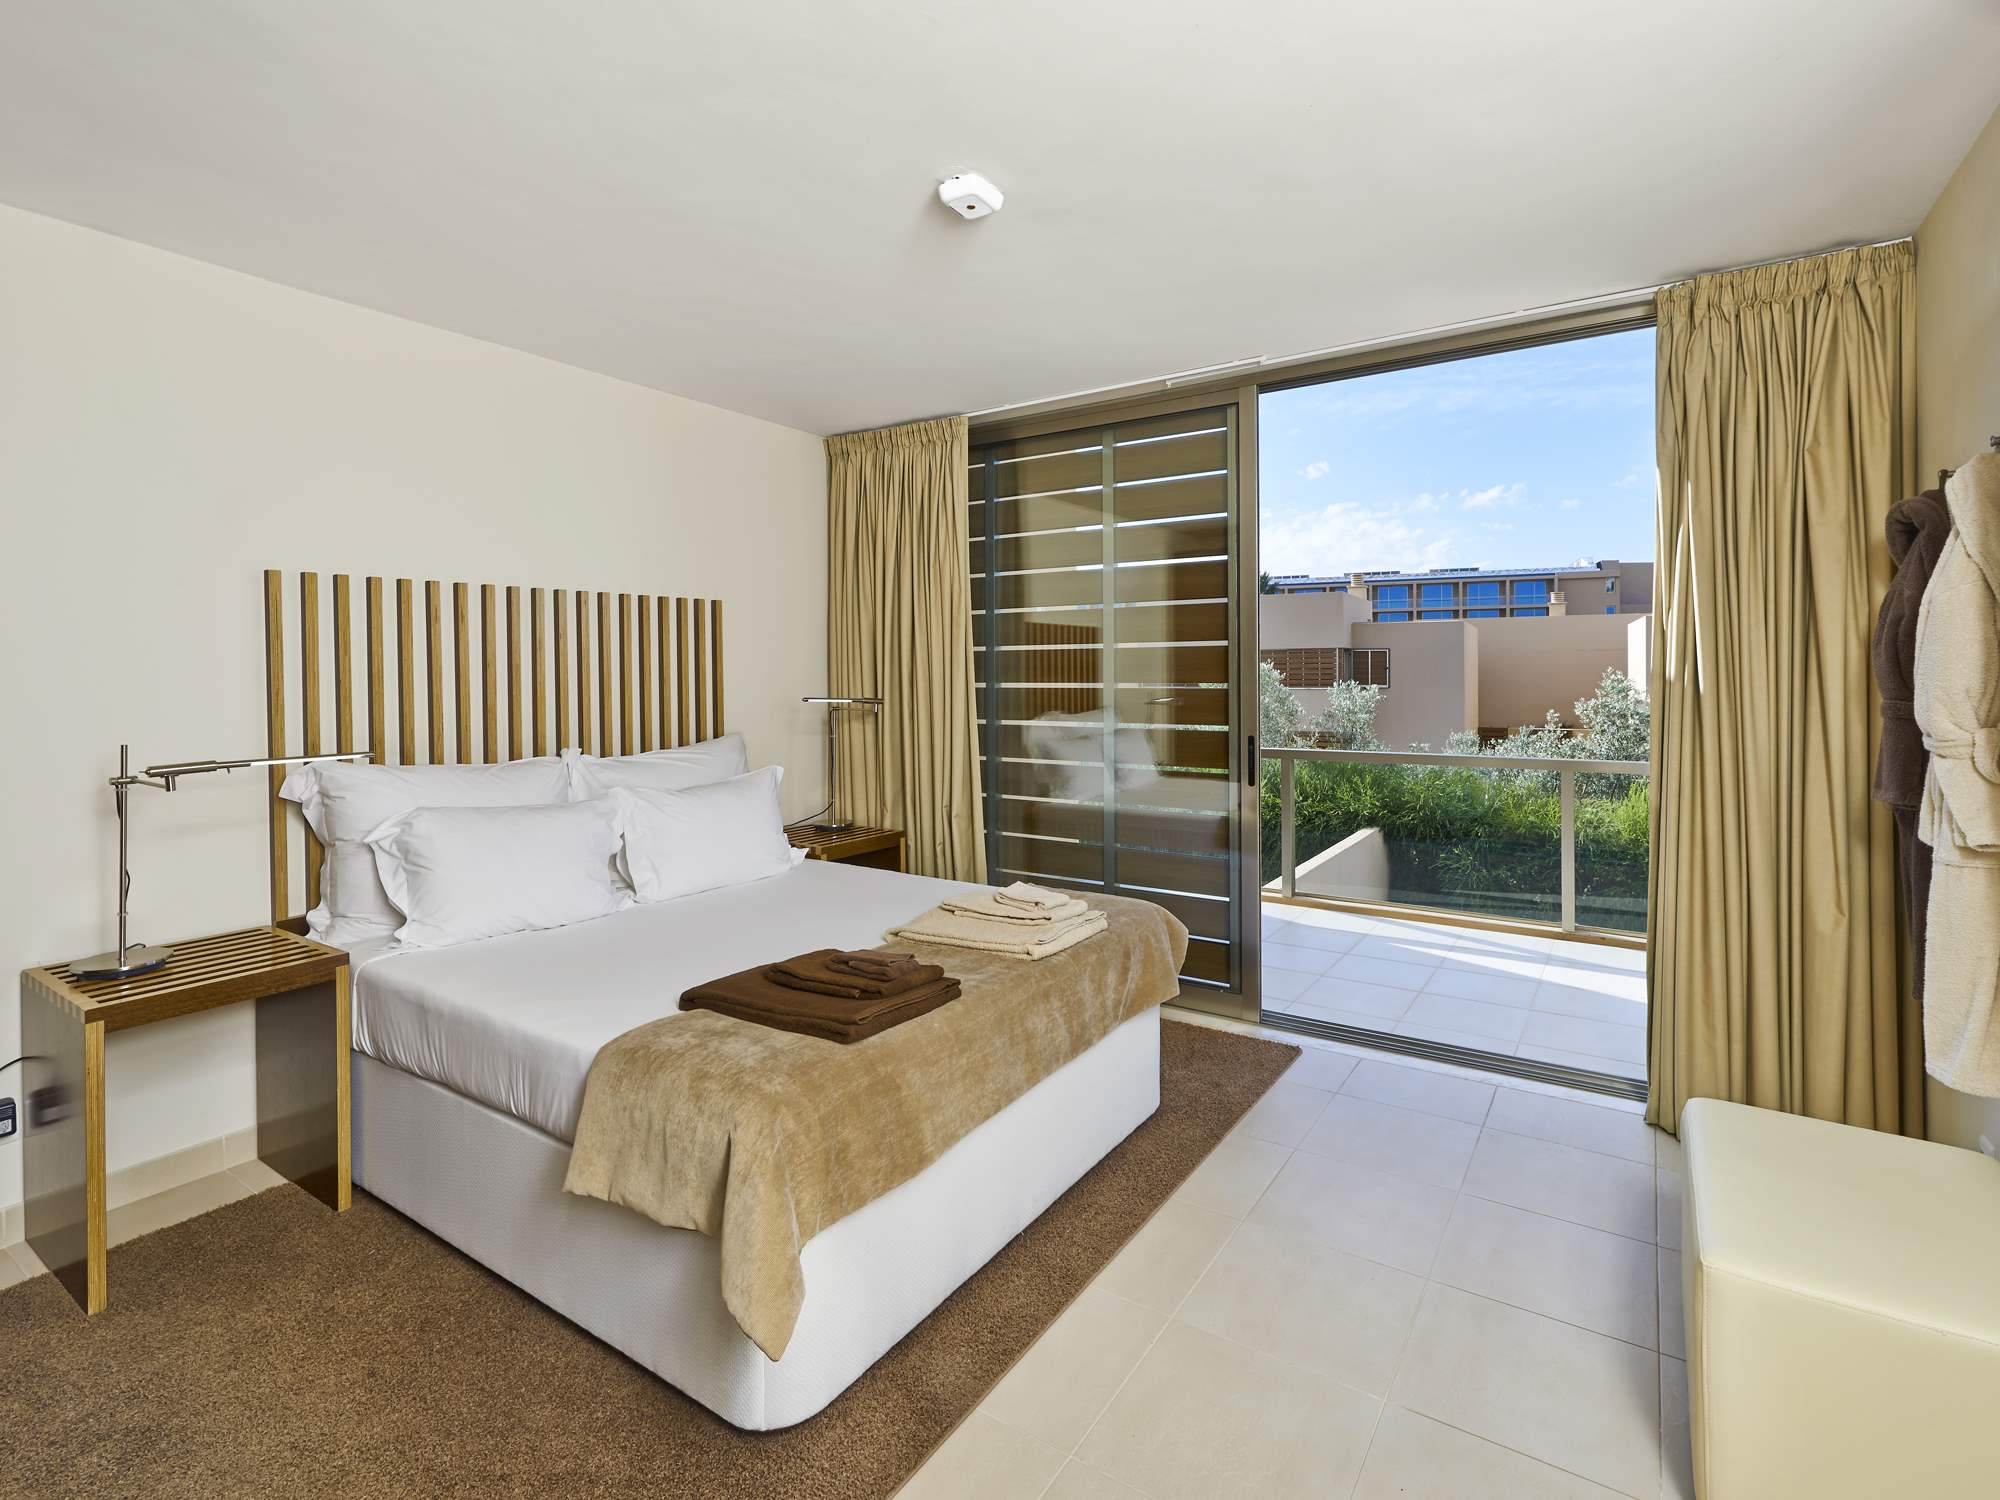 Salgados Beach Villas, 4 Bed, SC Basis, 4 bedroom villa in Gale, Vale da Parra and Guia, Algarve Photo #8